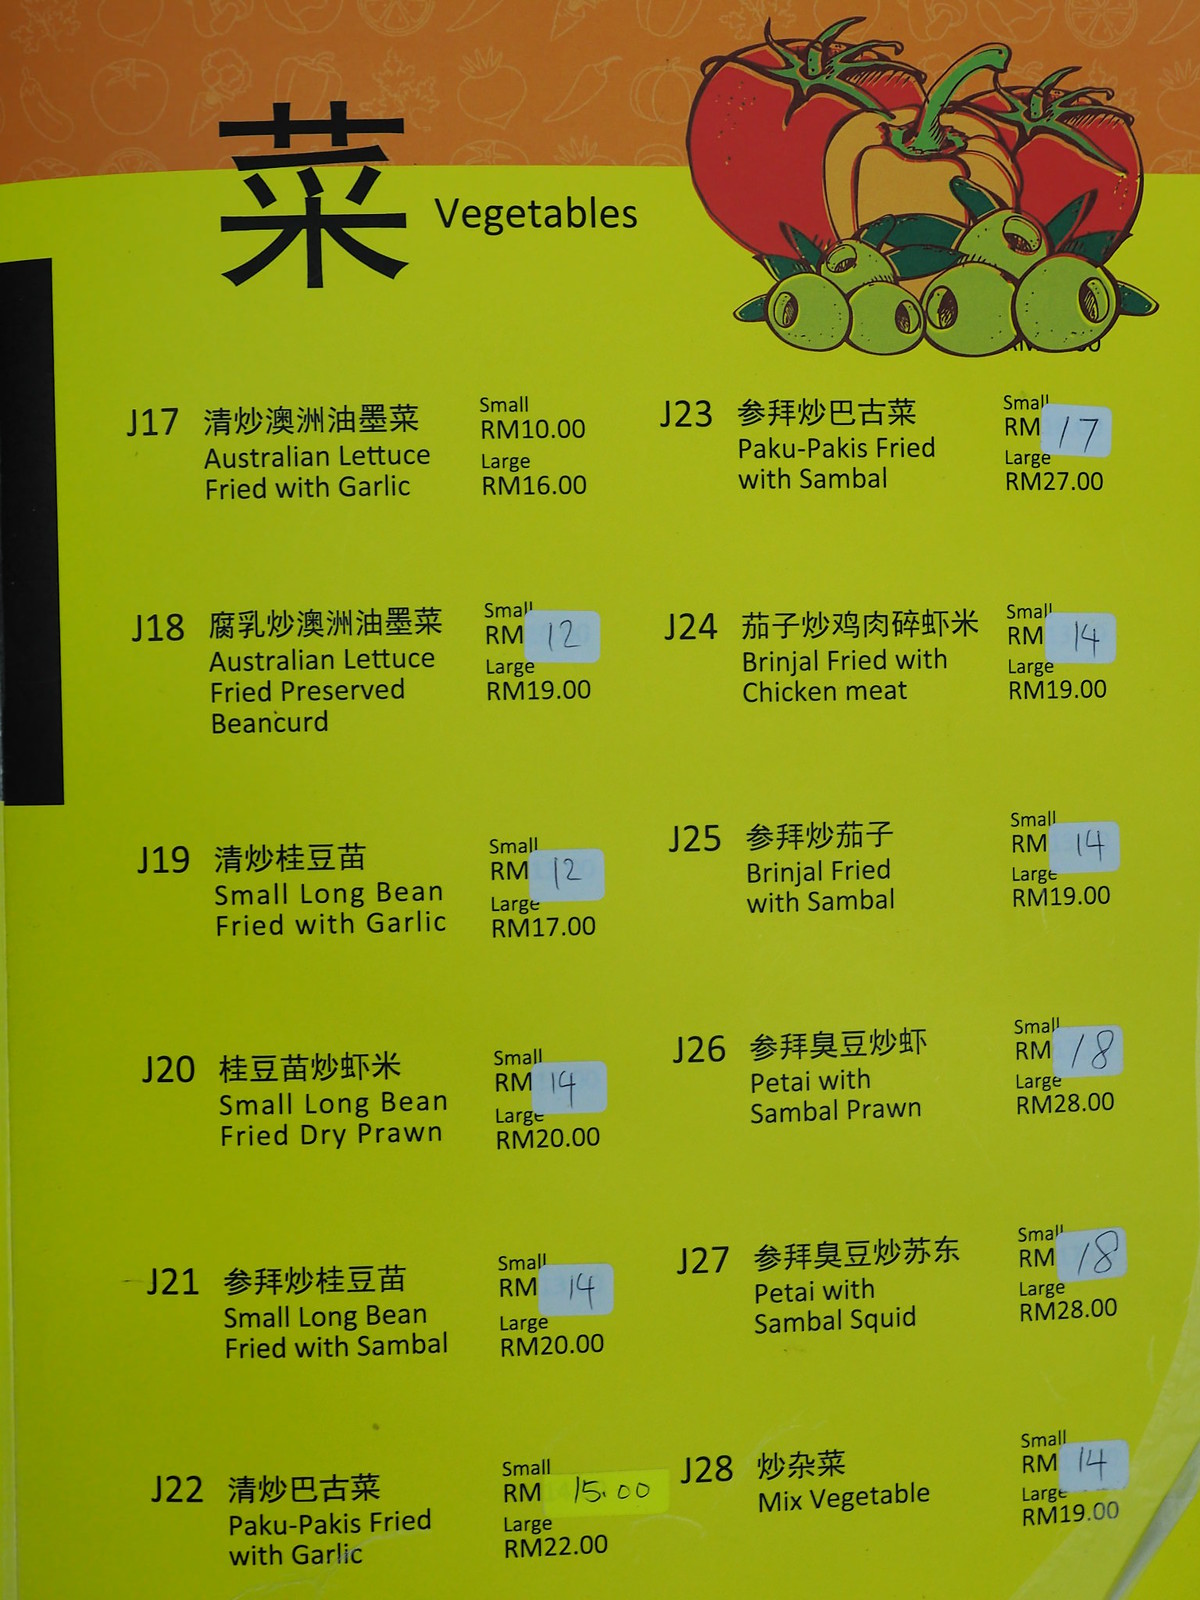 Vegetables menu